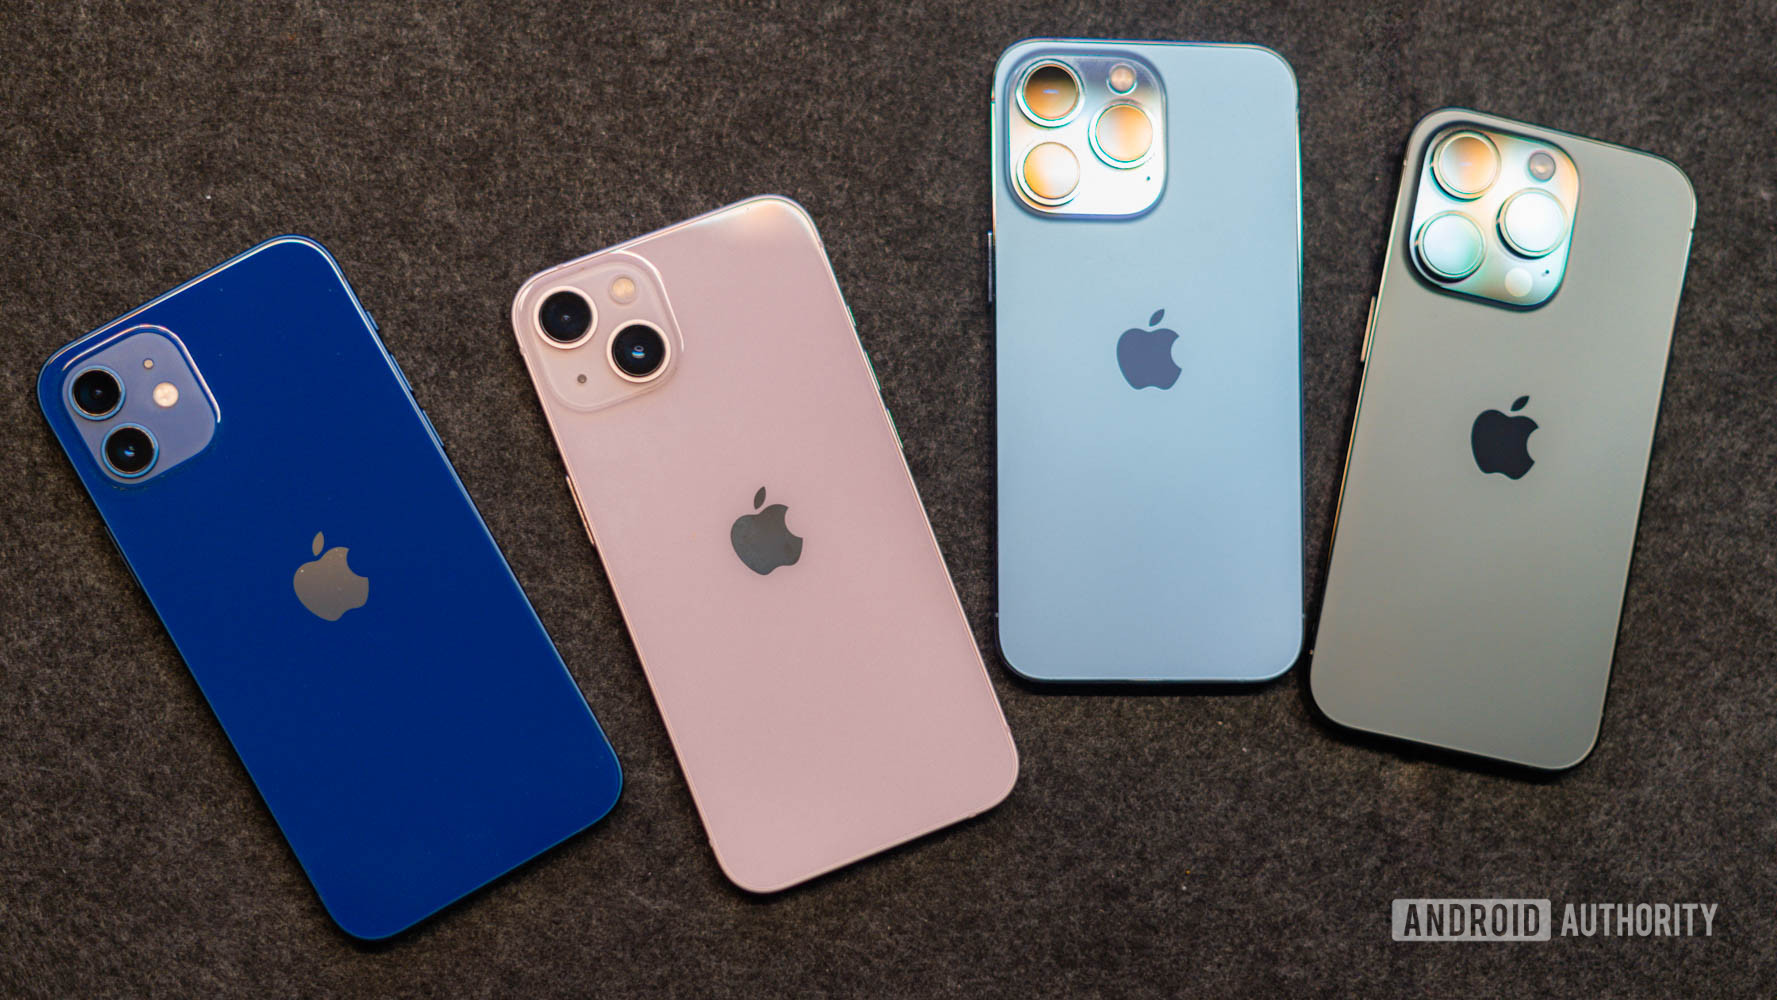 La parte posterior de un iPhone 12, iPhone 13, iPhone 14 y iPhone 14 colocado sobre una alfombrilla negra vista desde arriba.